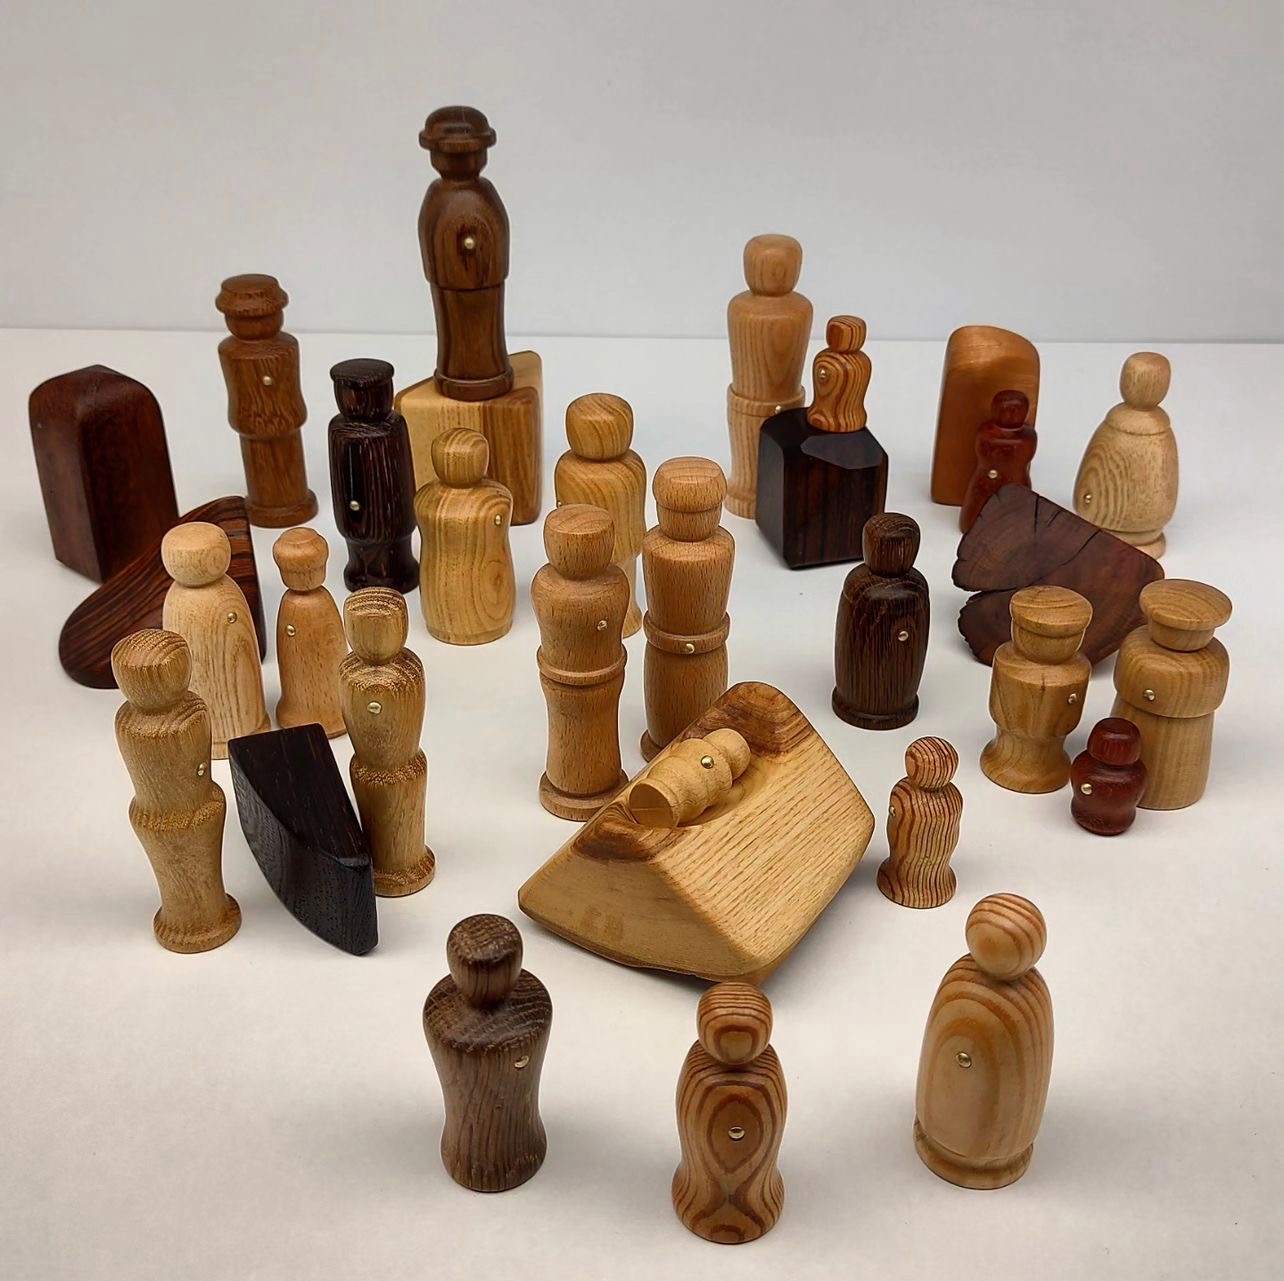 Schachfiguren aus Holz, Mine Bayca-Gegin